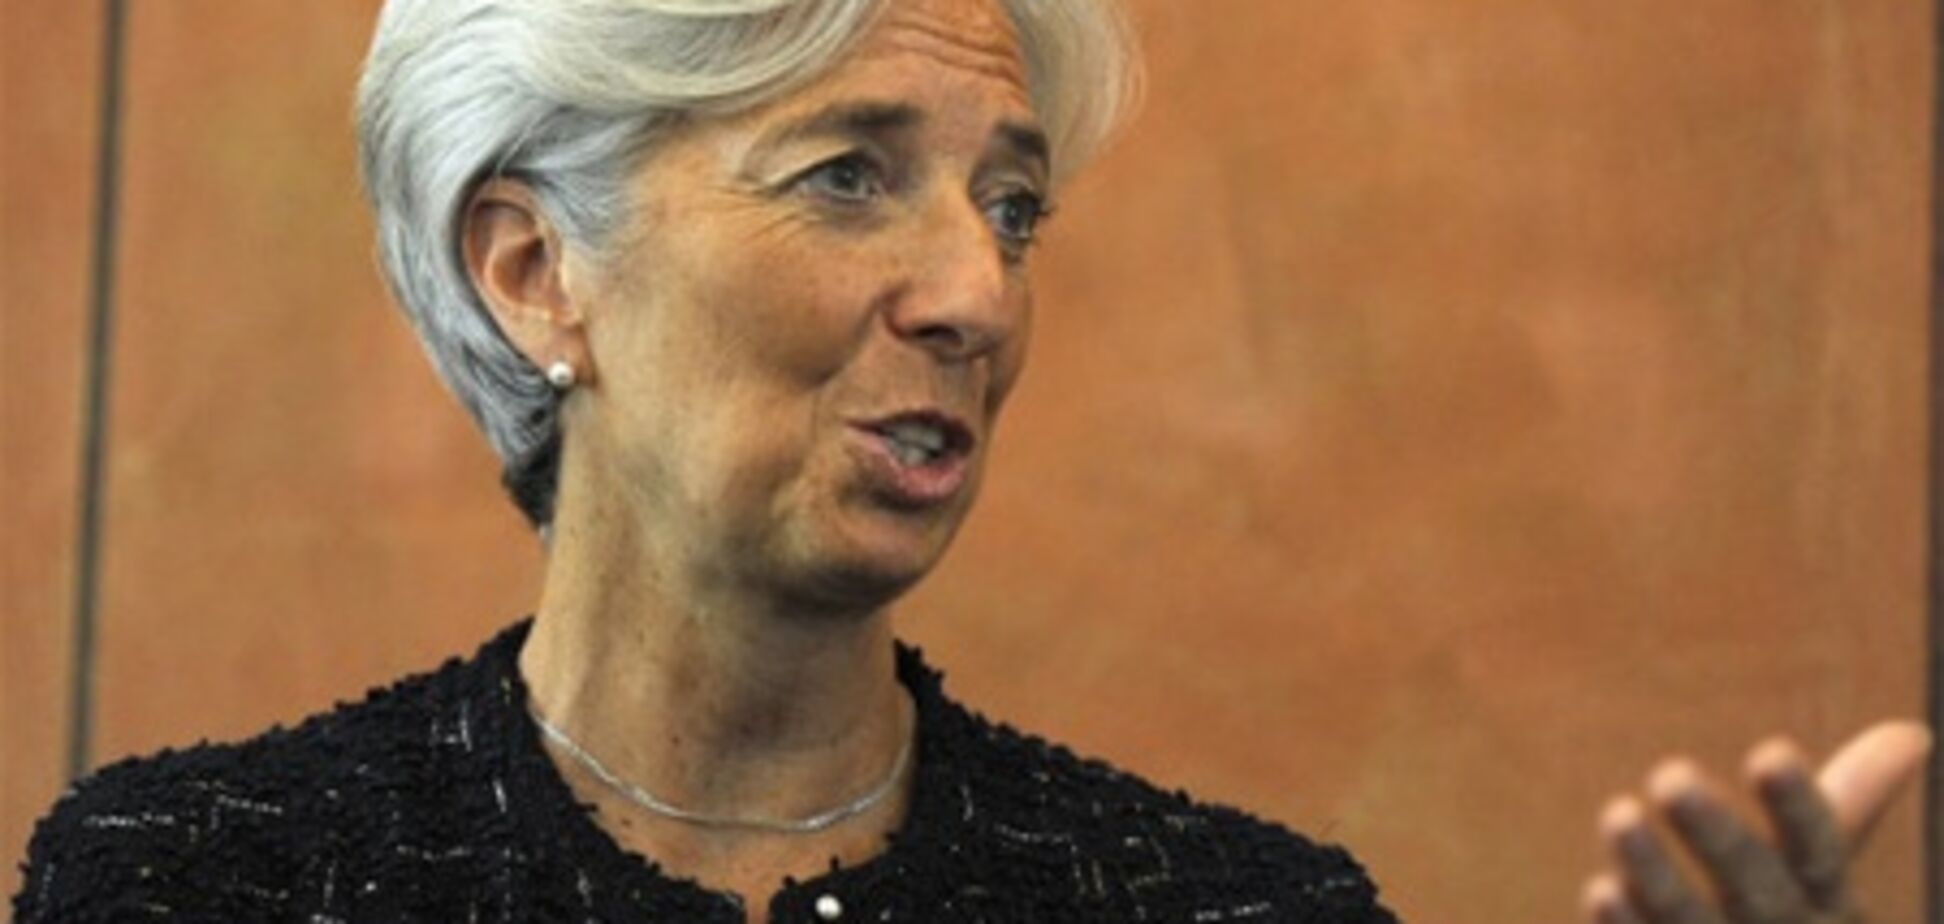 МВФ одобрил результаты обратного выкупа облигаций Греции на 32 млрд евро